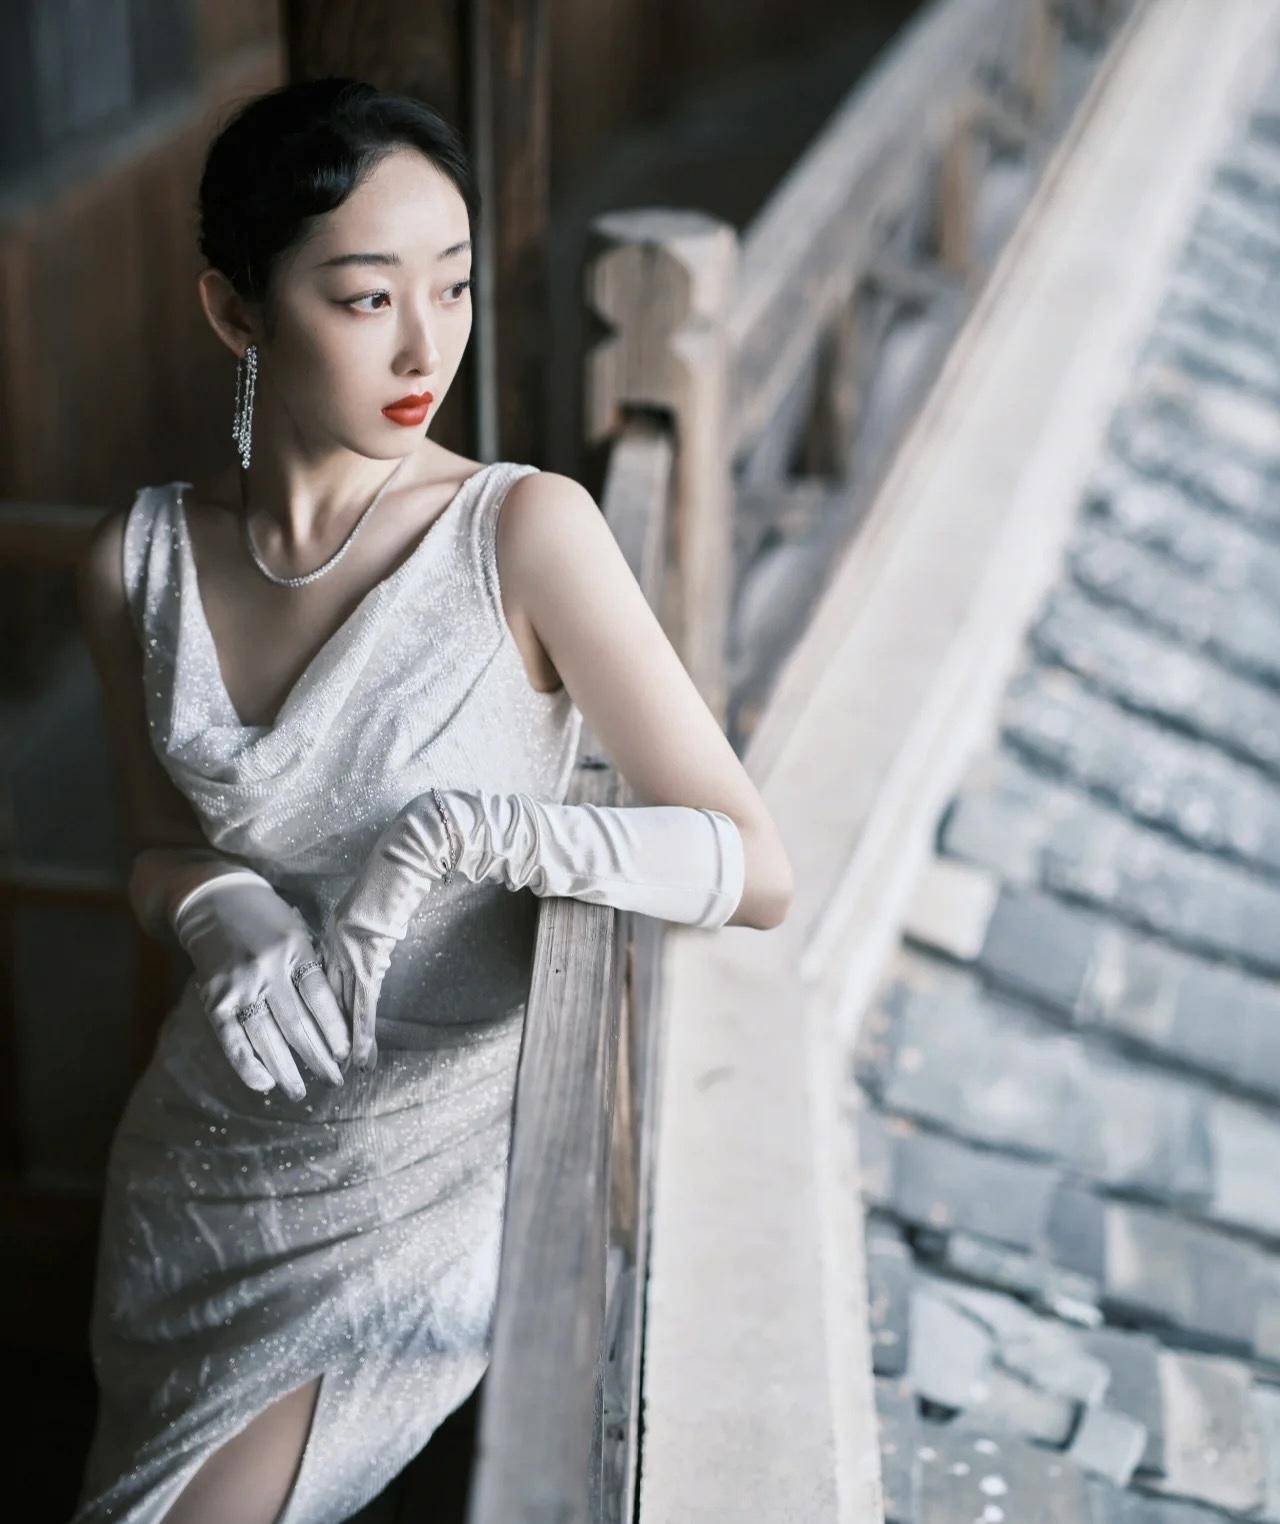 10版《红楼梦》女子超多 看李沁,徐璐,阚清子……美照高光时刻